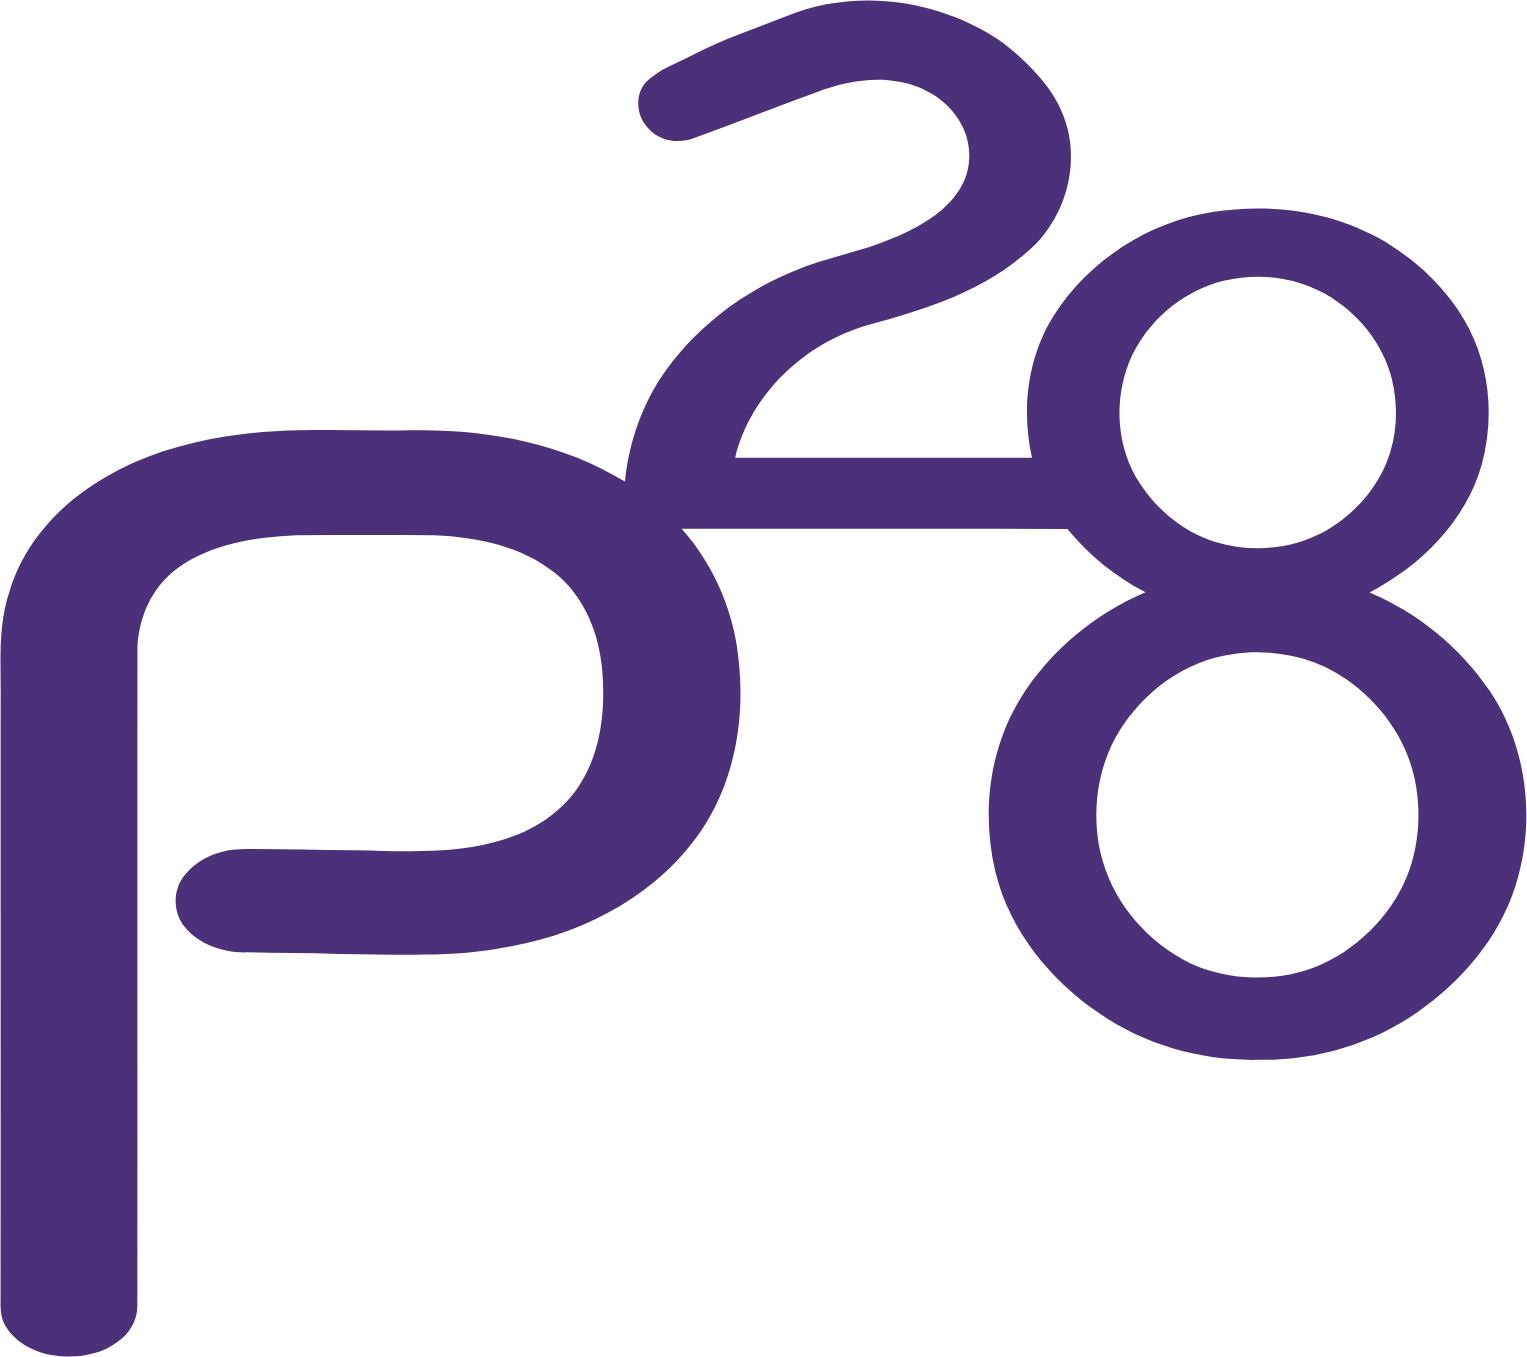 Paragon 28 logo (transparent PNG)